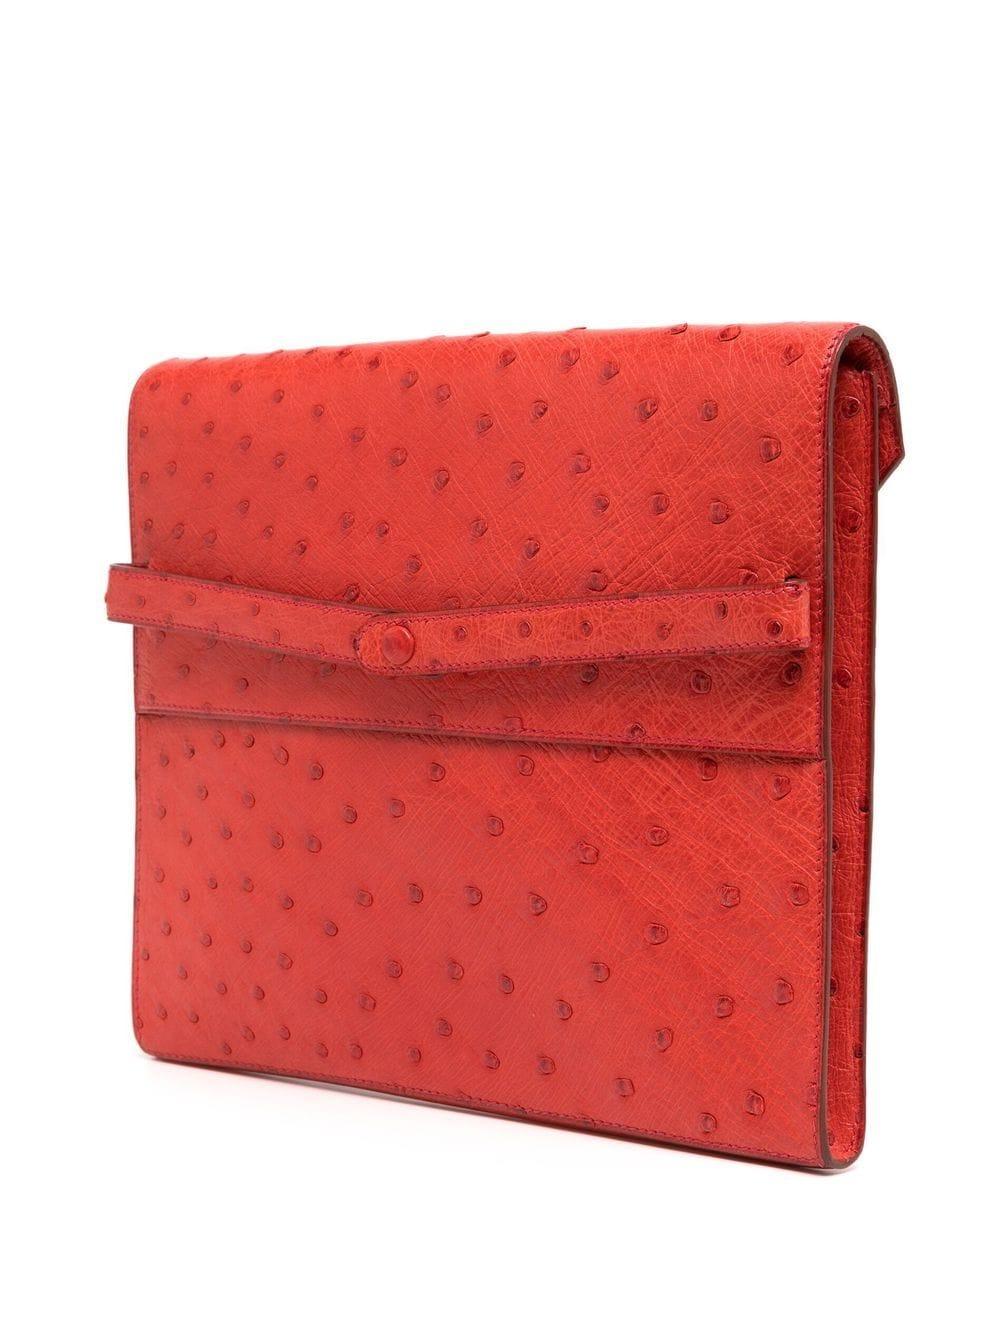 Die Red Ostrich Liddy Clutch Bag ist ein zeitloses und elegantes Modell mit minimalistischen, klaren Linien und Hermès' Vorliebe für leuchtende Farben. Diese seltene und begehrte Clutch aus genarbtem Leder in einem leuchtenden Rotton ist ein Muss in